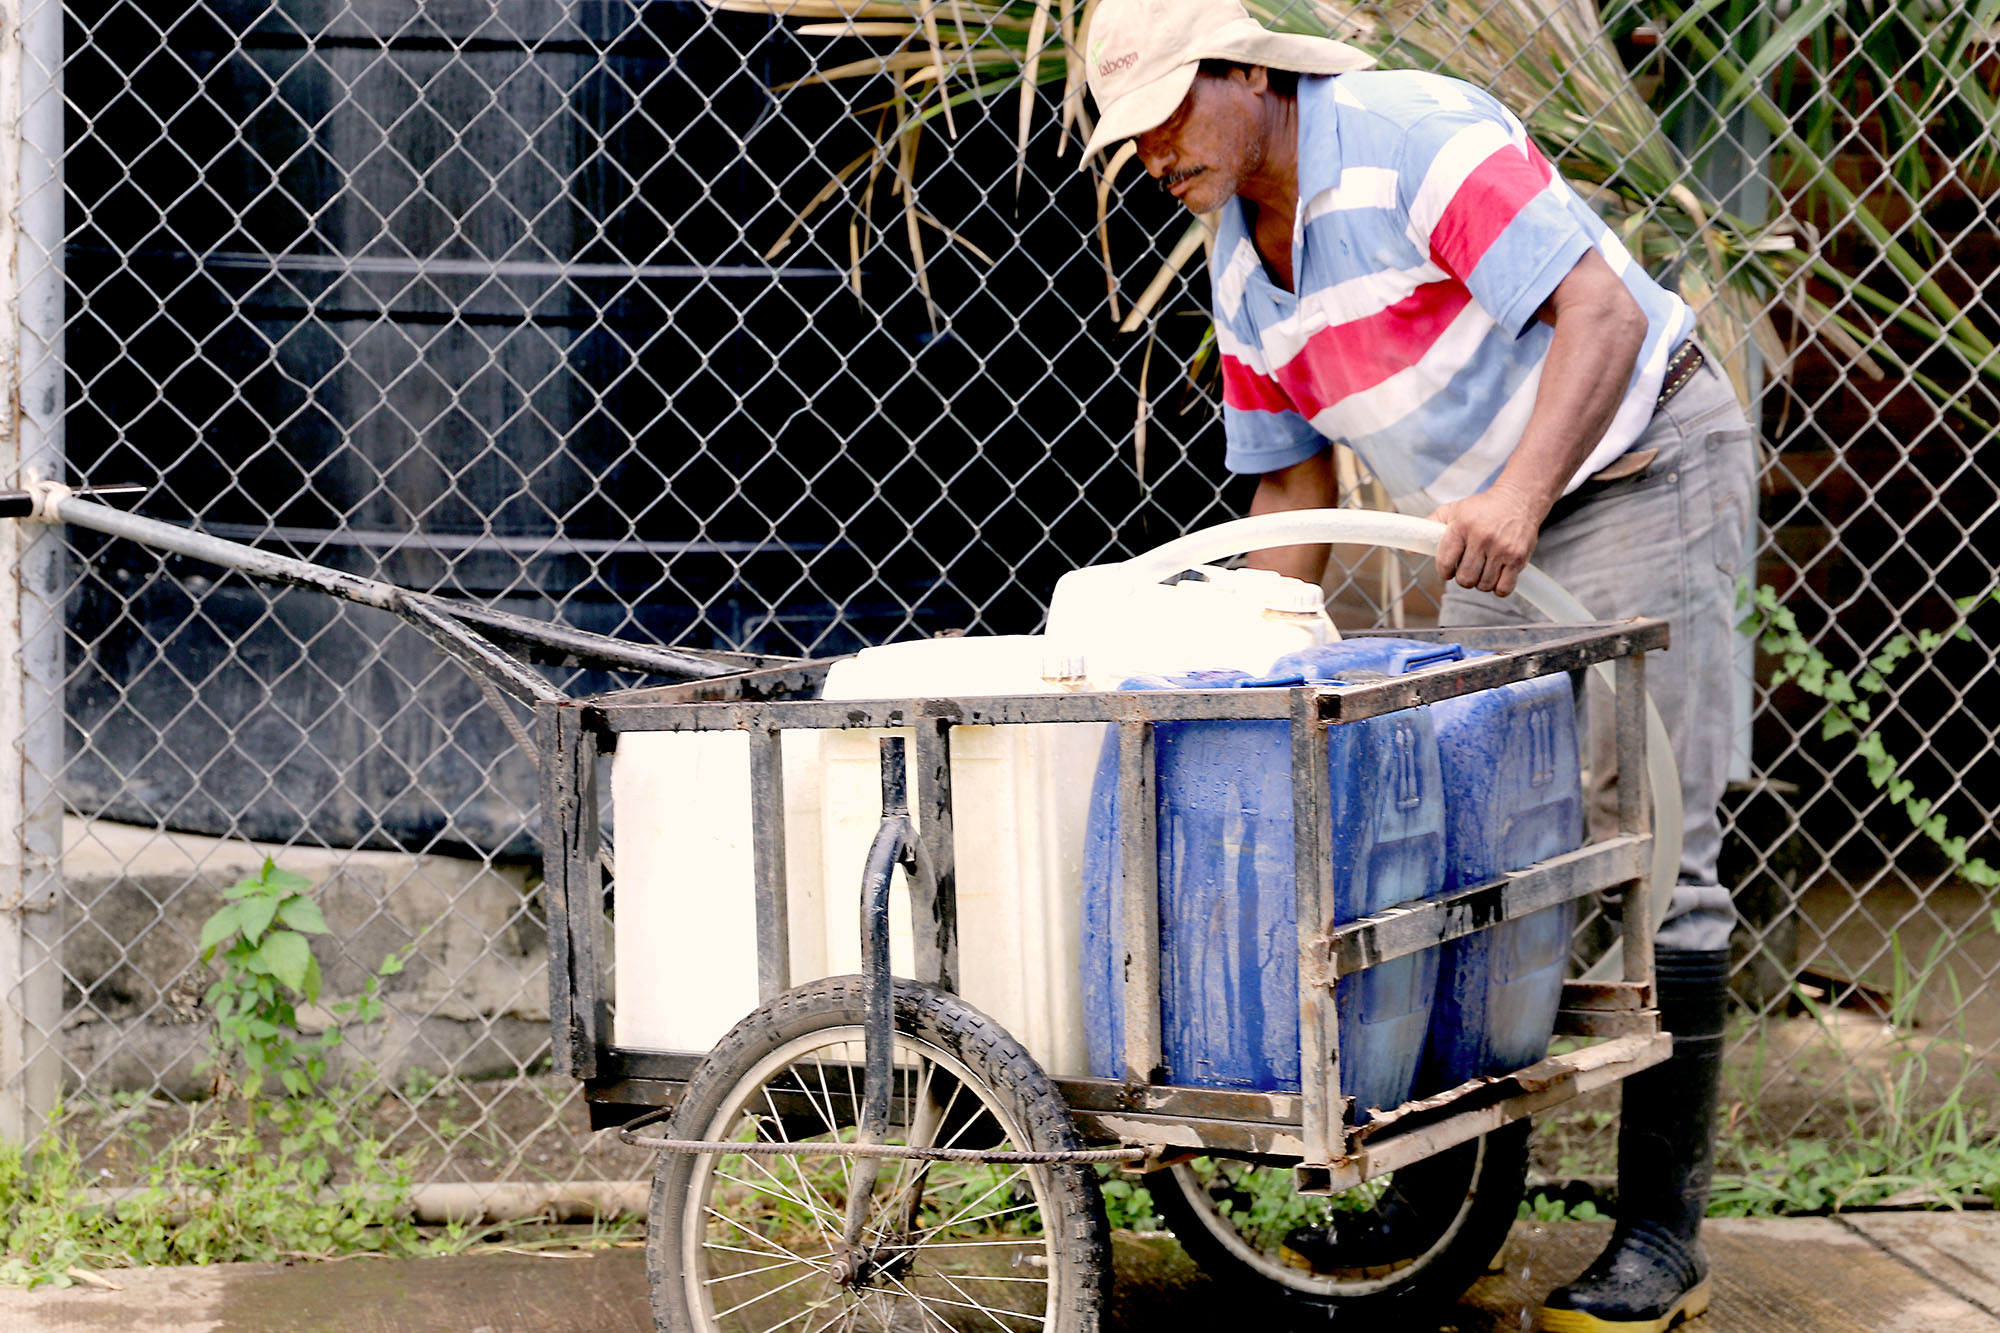 En Guanacaste el acceso a fuente de agua potable de calidad es una de las problemáticas que inciden en la calidad de vida de las personas, el impulso del desarrollo comunitario y la democratización en el uso de los recursos naturales. Foto archivo EC-587